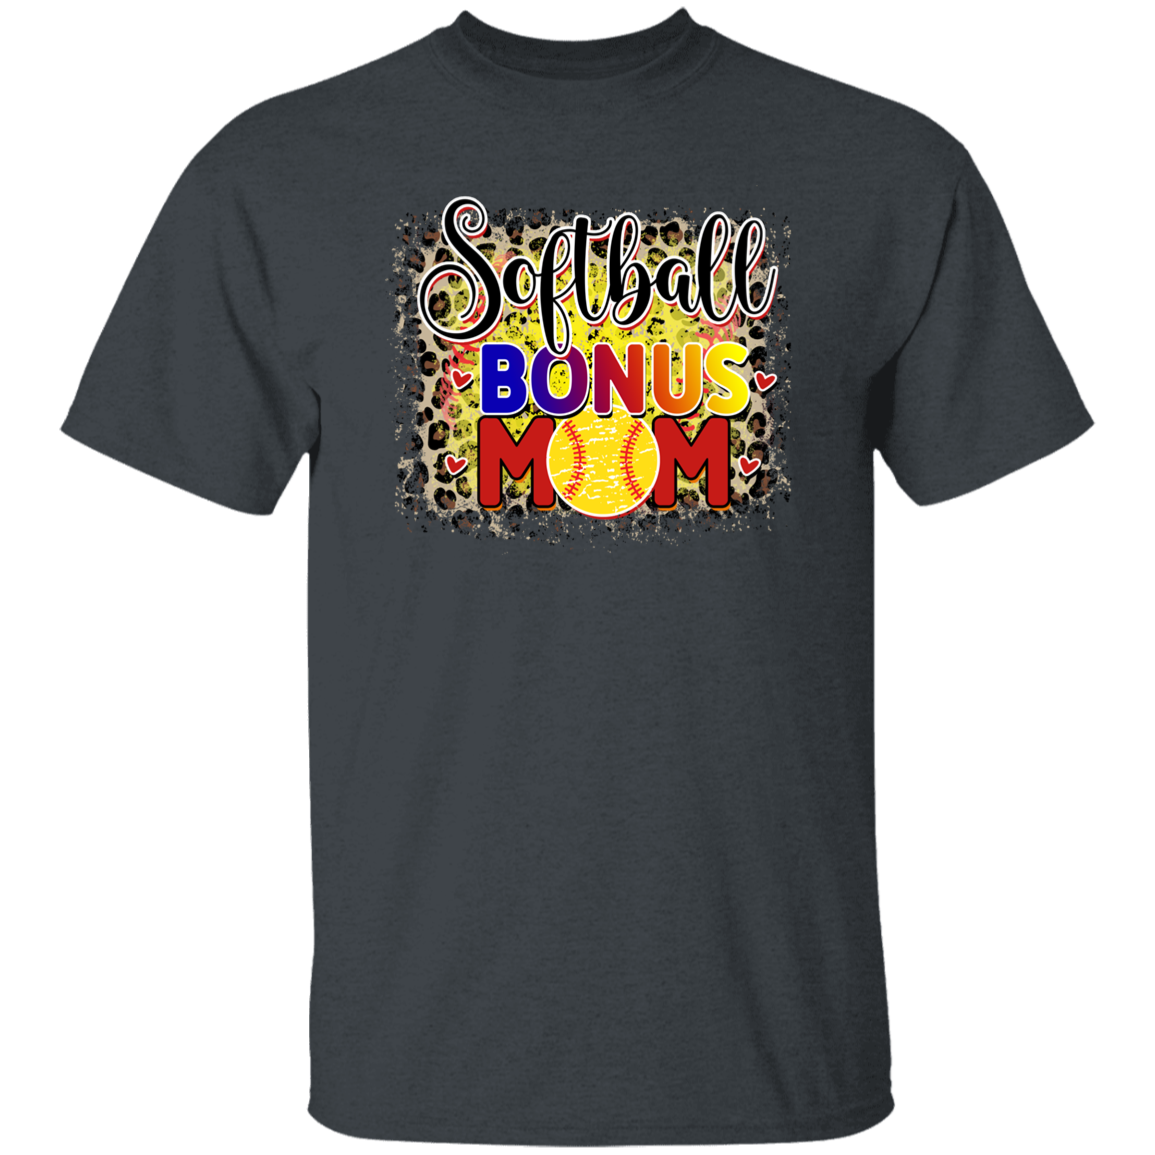 Bonus Mom T-Shirt